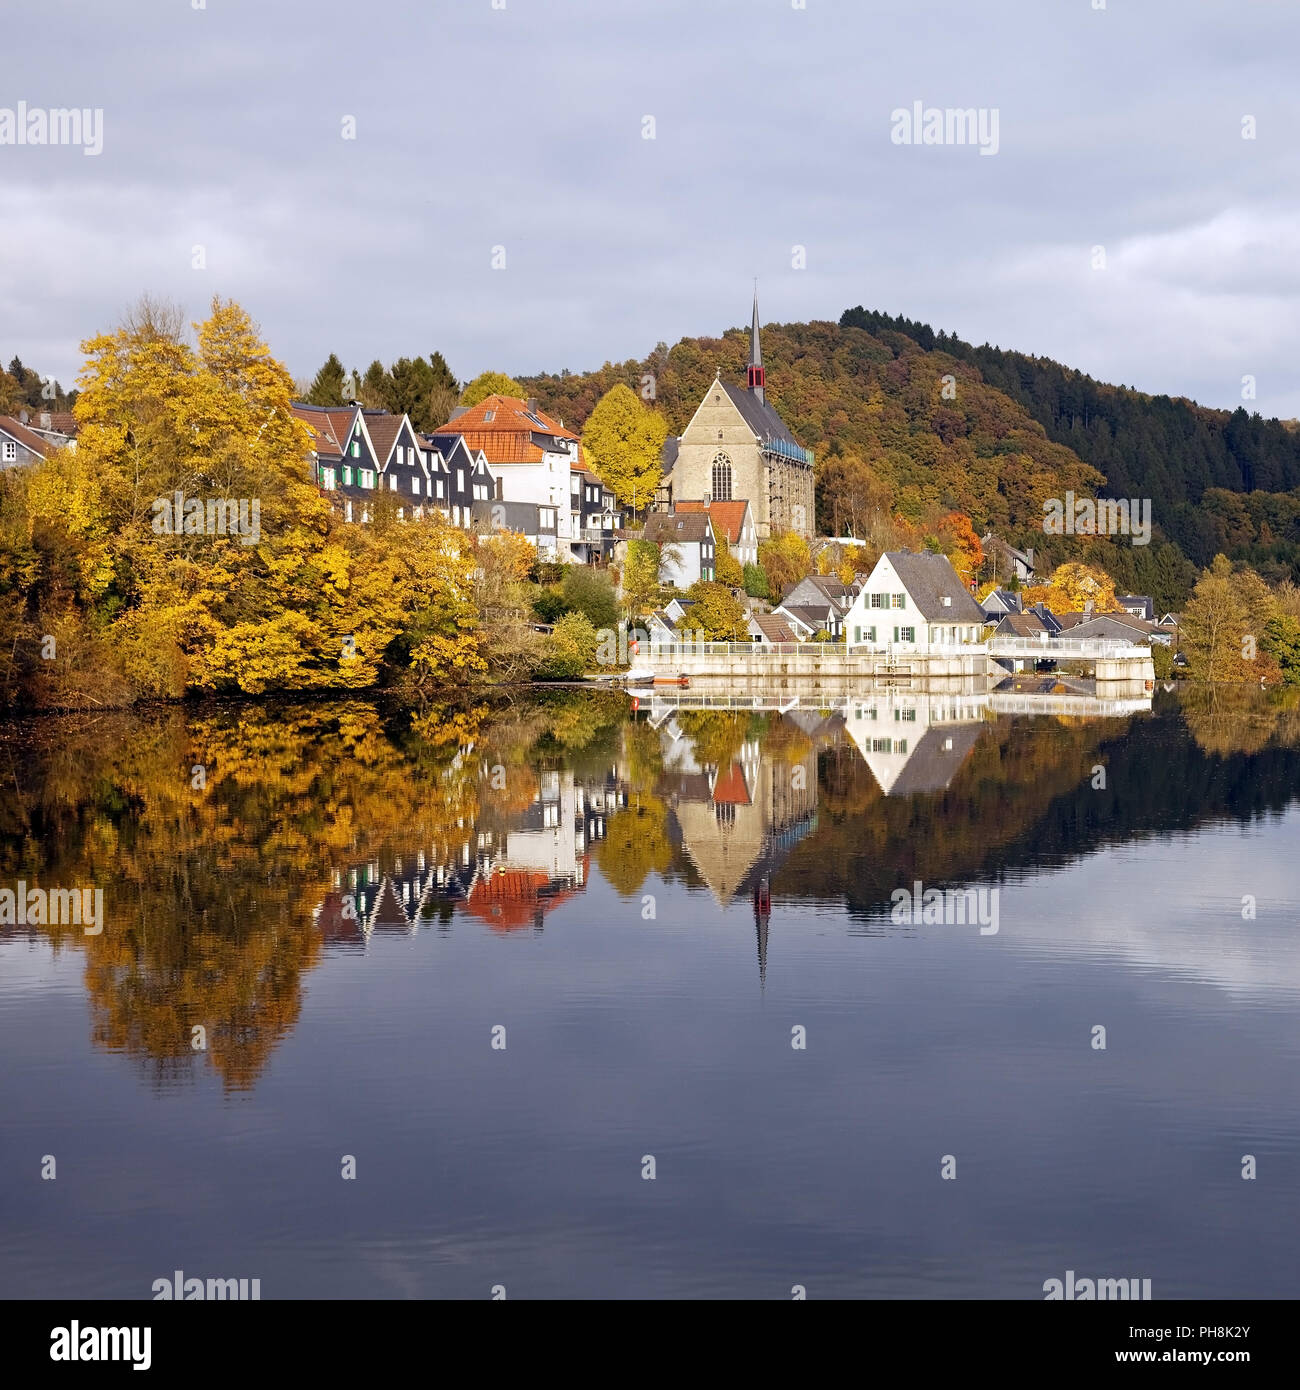 Beyenburger reservoir, autumn, Wuppertal Stock Photo